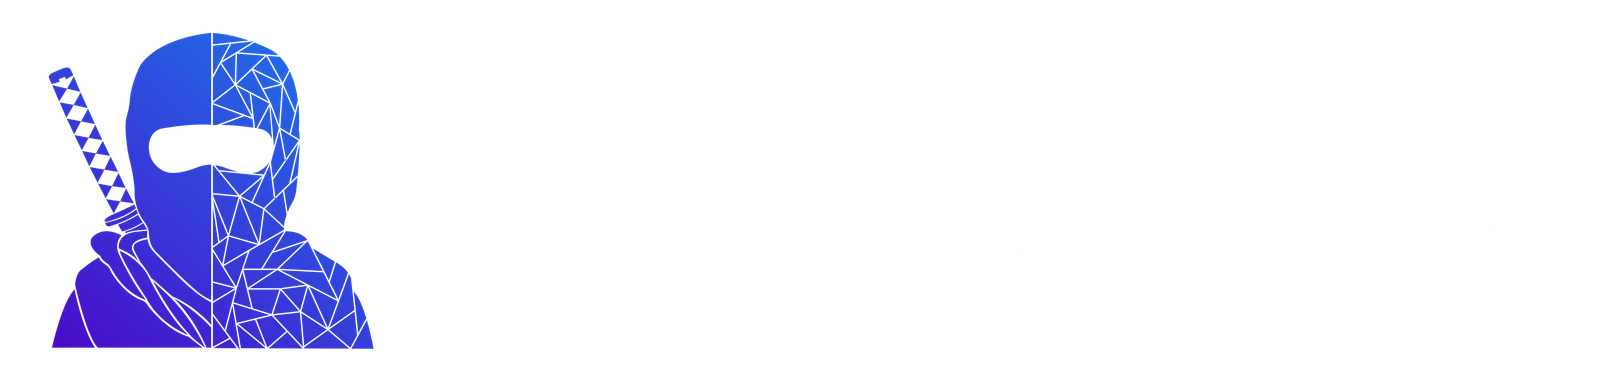 The Ninja EA